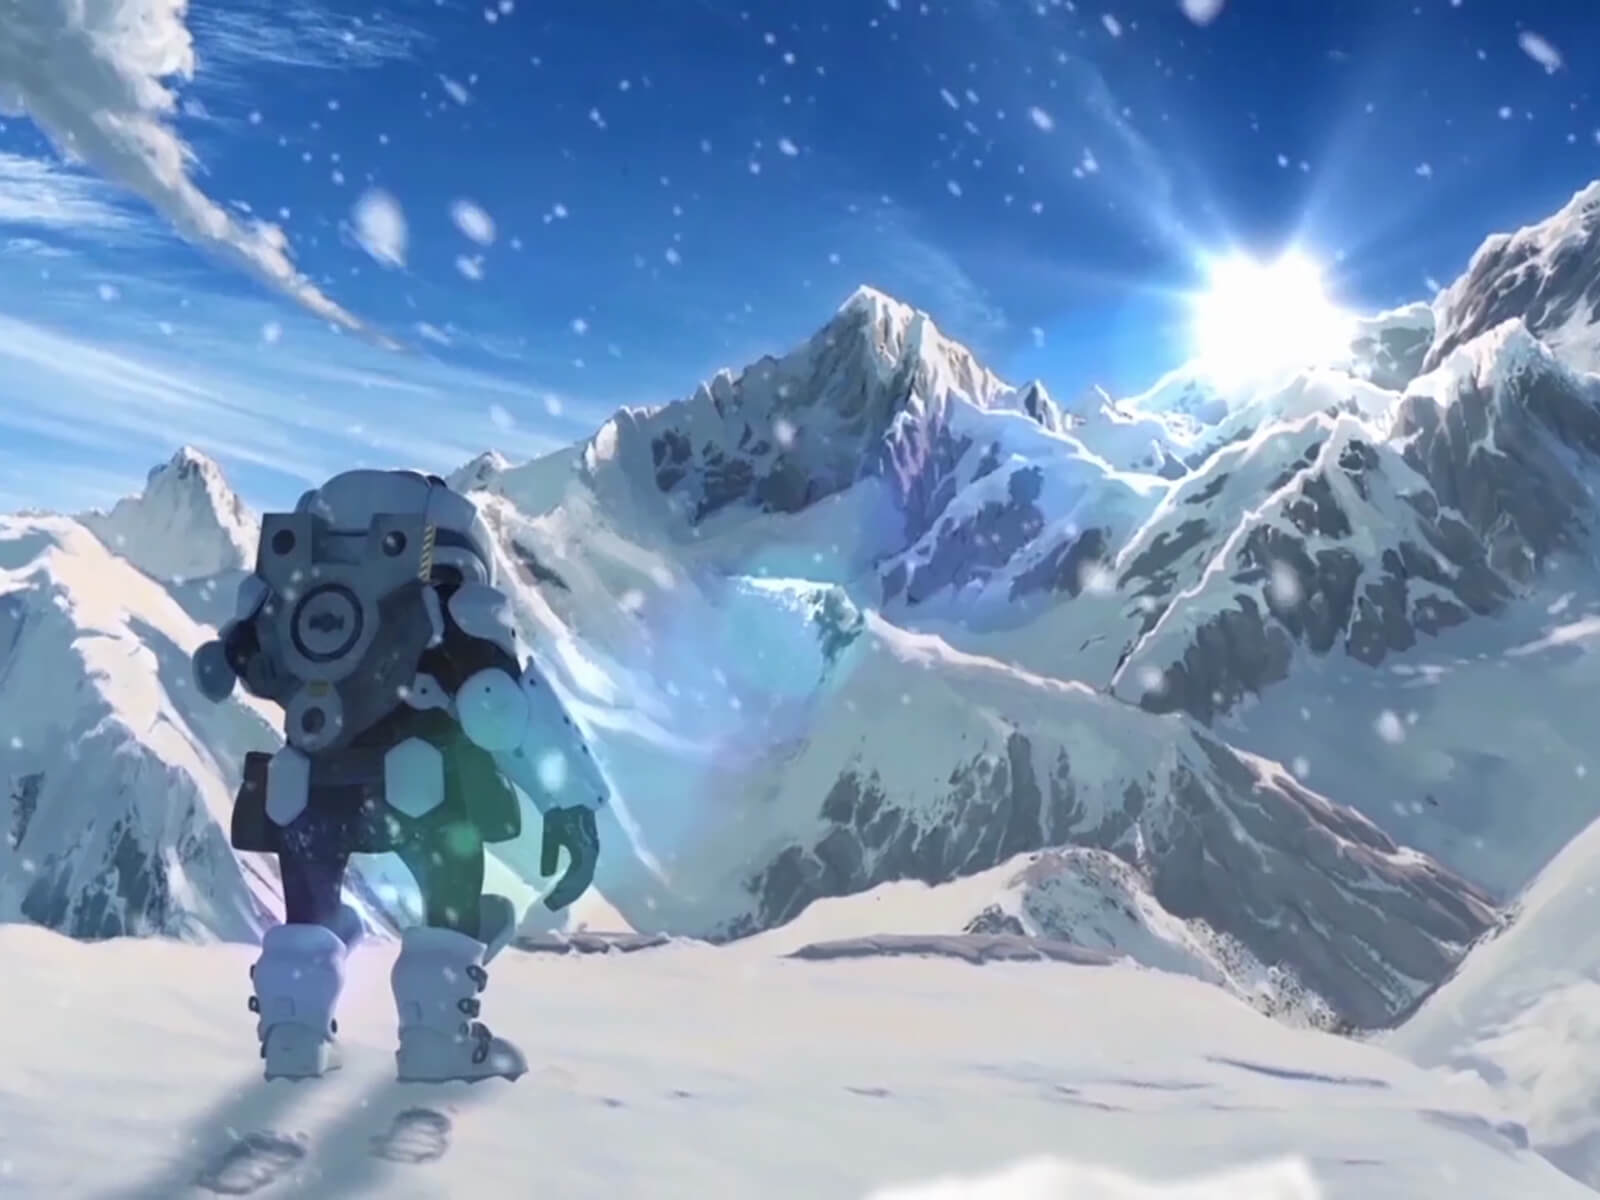 Instantánea del cortometraje de animación desarrollado por alumnos 1457 LAST en la que sale el protagonista mirando a unas montañas nevadas.